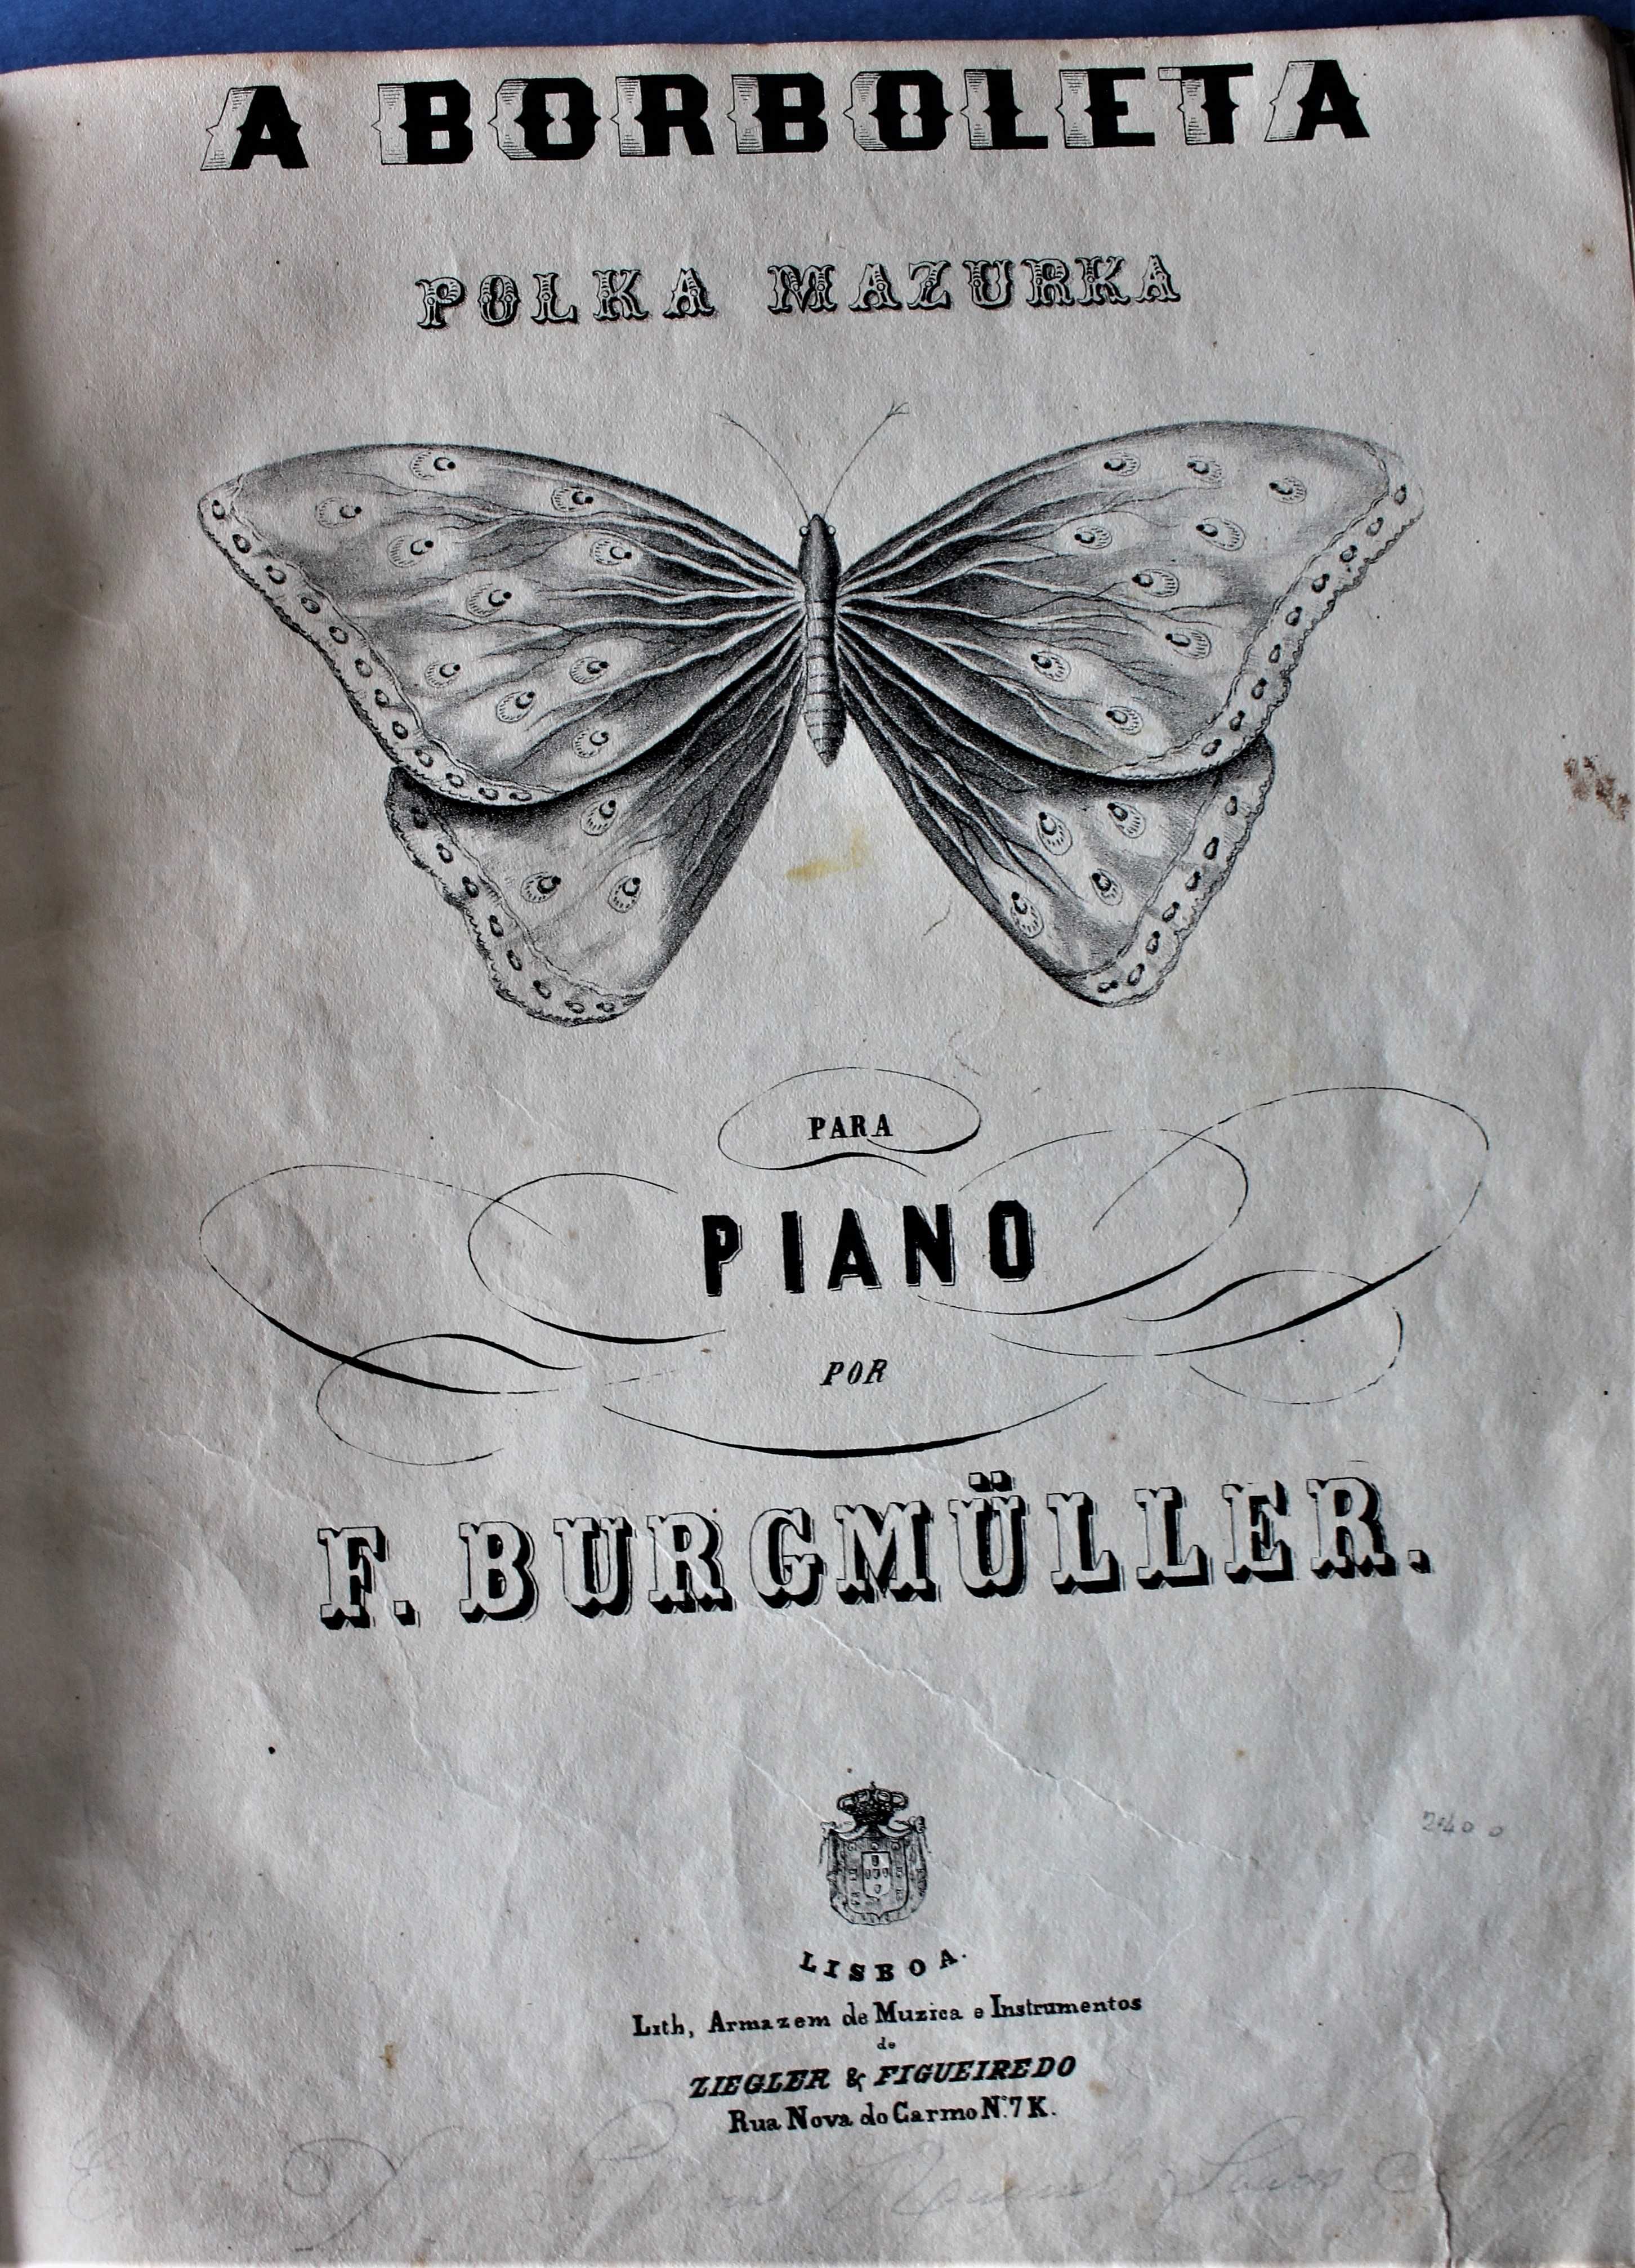 INAUGURAÇÃO CAMINHOS DE FERRO 1853 POLKA PAUTAS MUSICAIS INVULGAR